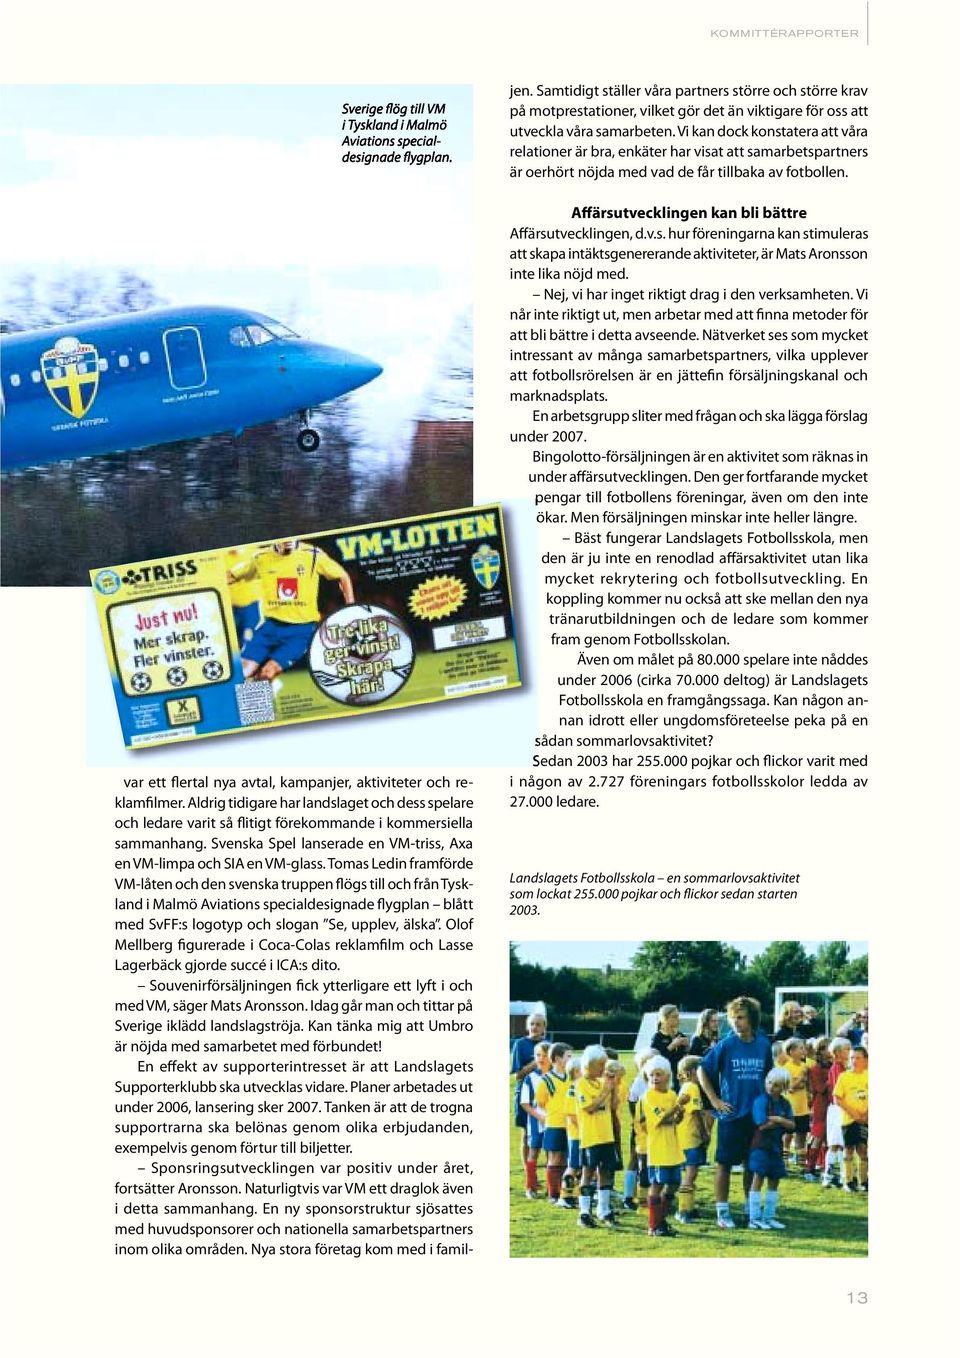 Tomas Ledin framförde VM-låten och den svenska truppen flögs till och från Tyskland i Malmö Aviations specialdesignade flygplan blått med SvFF:s logotyp och slogan Se, upplev, älska.